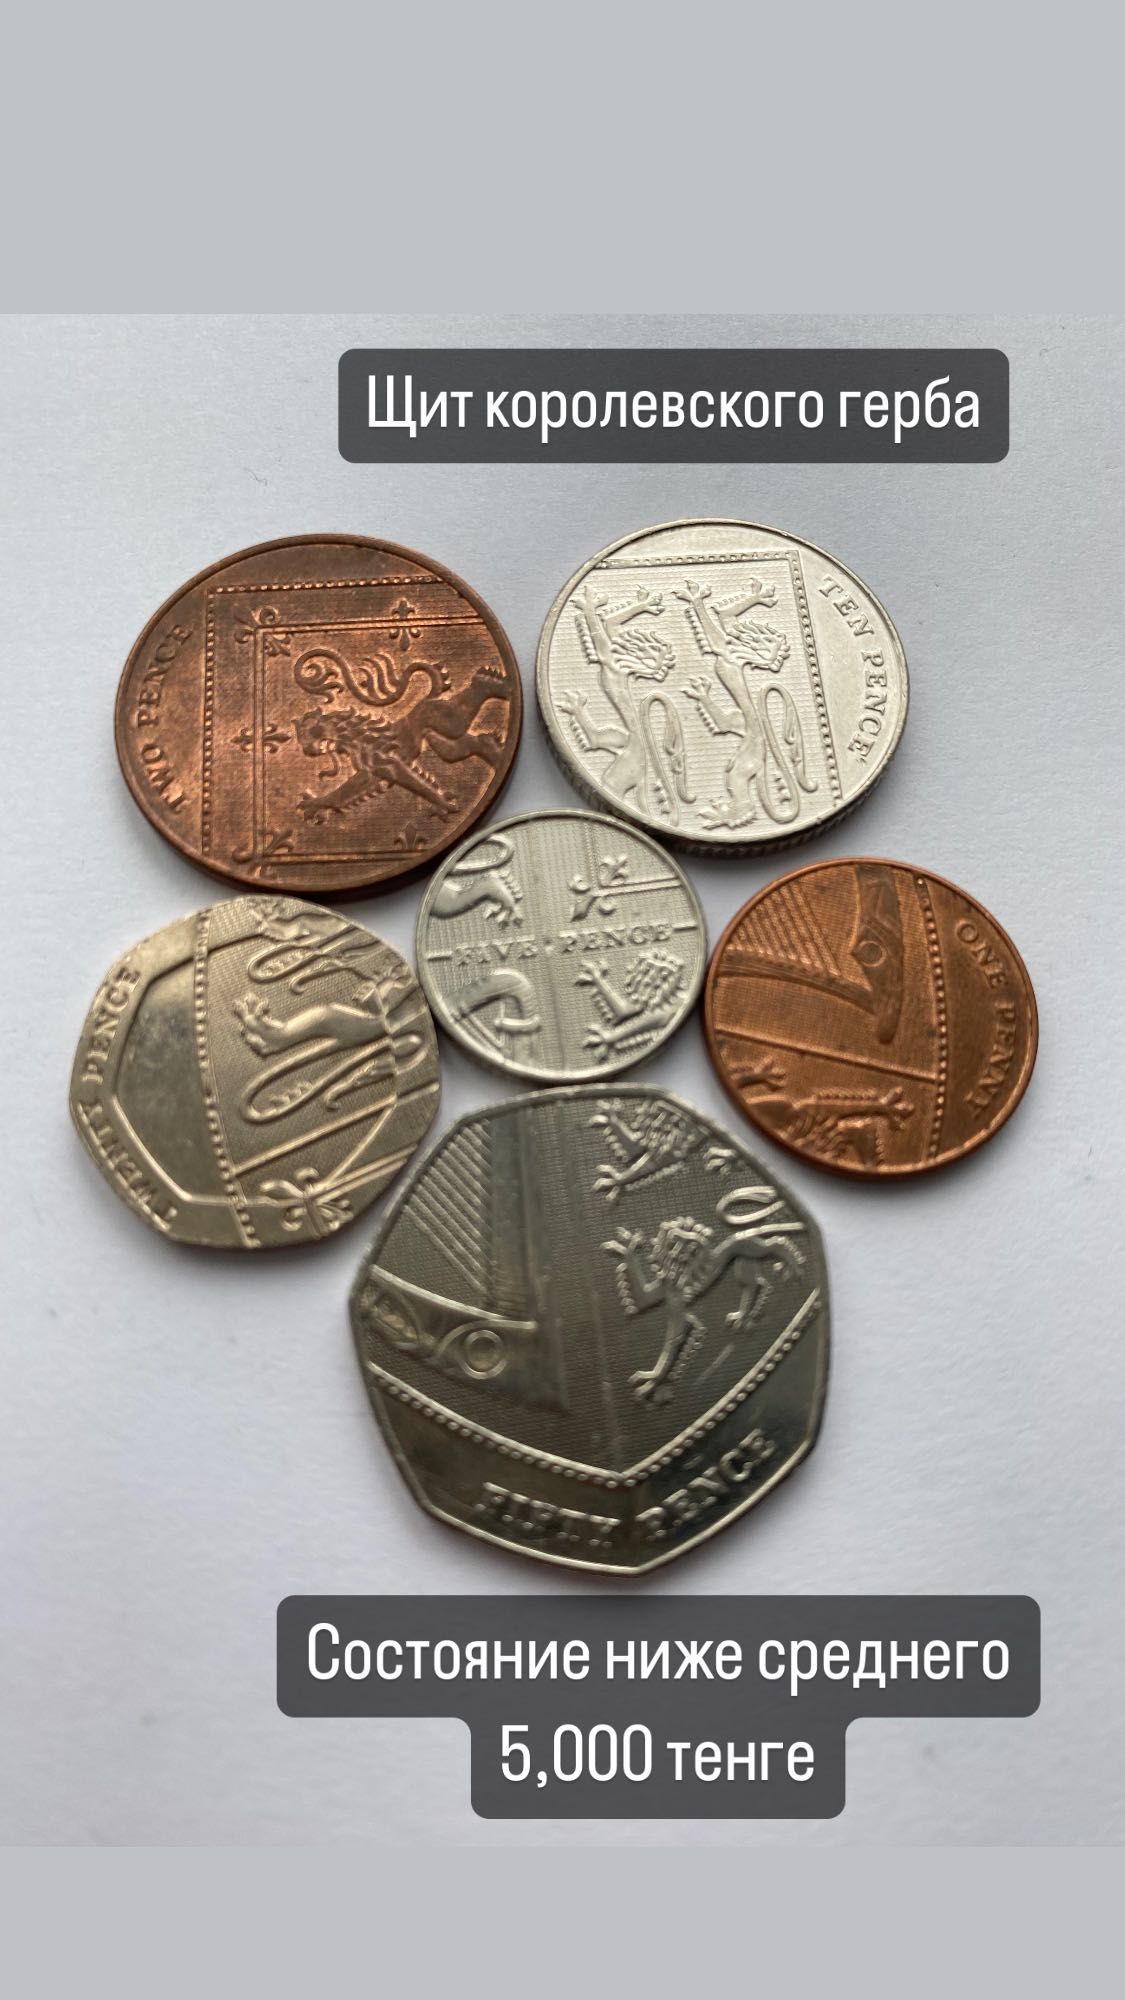 Коллекция Английский монет «Шит Королевского герба»